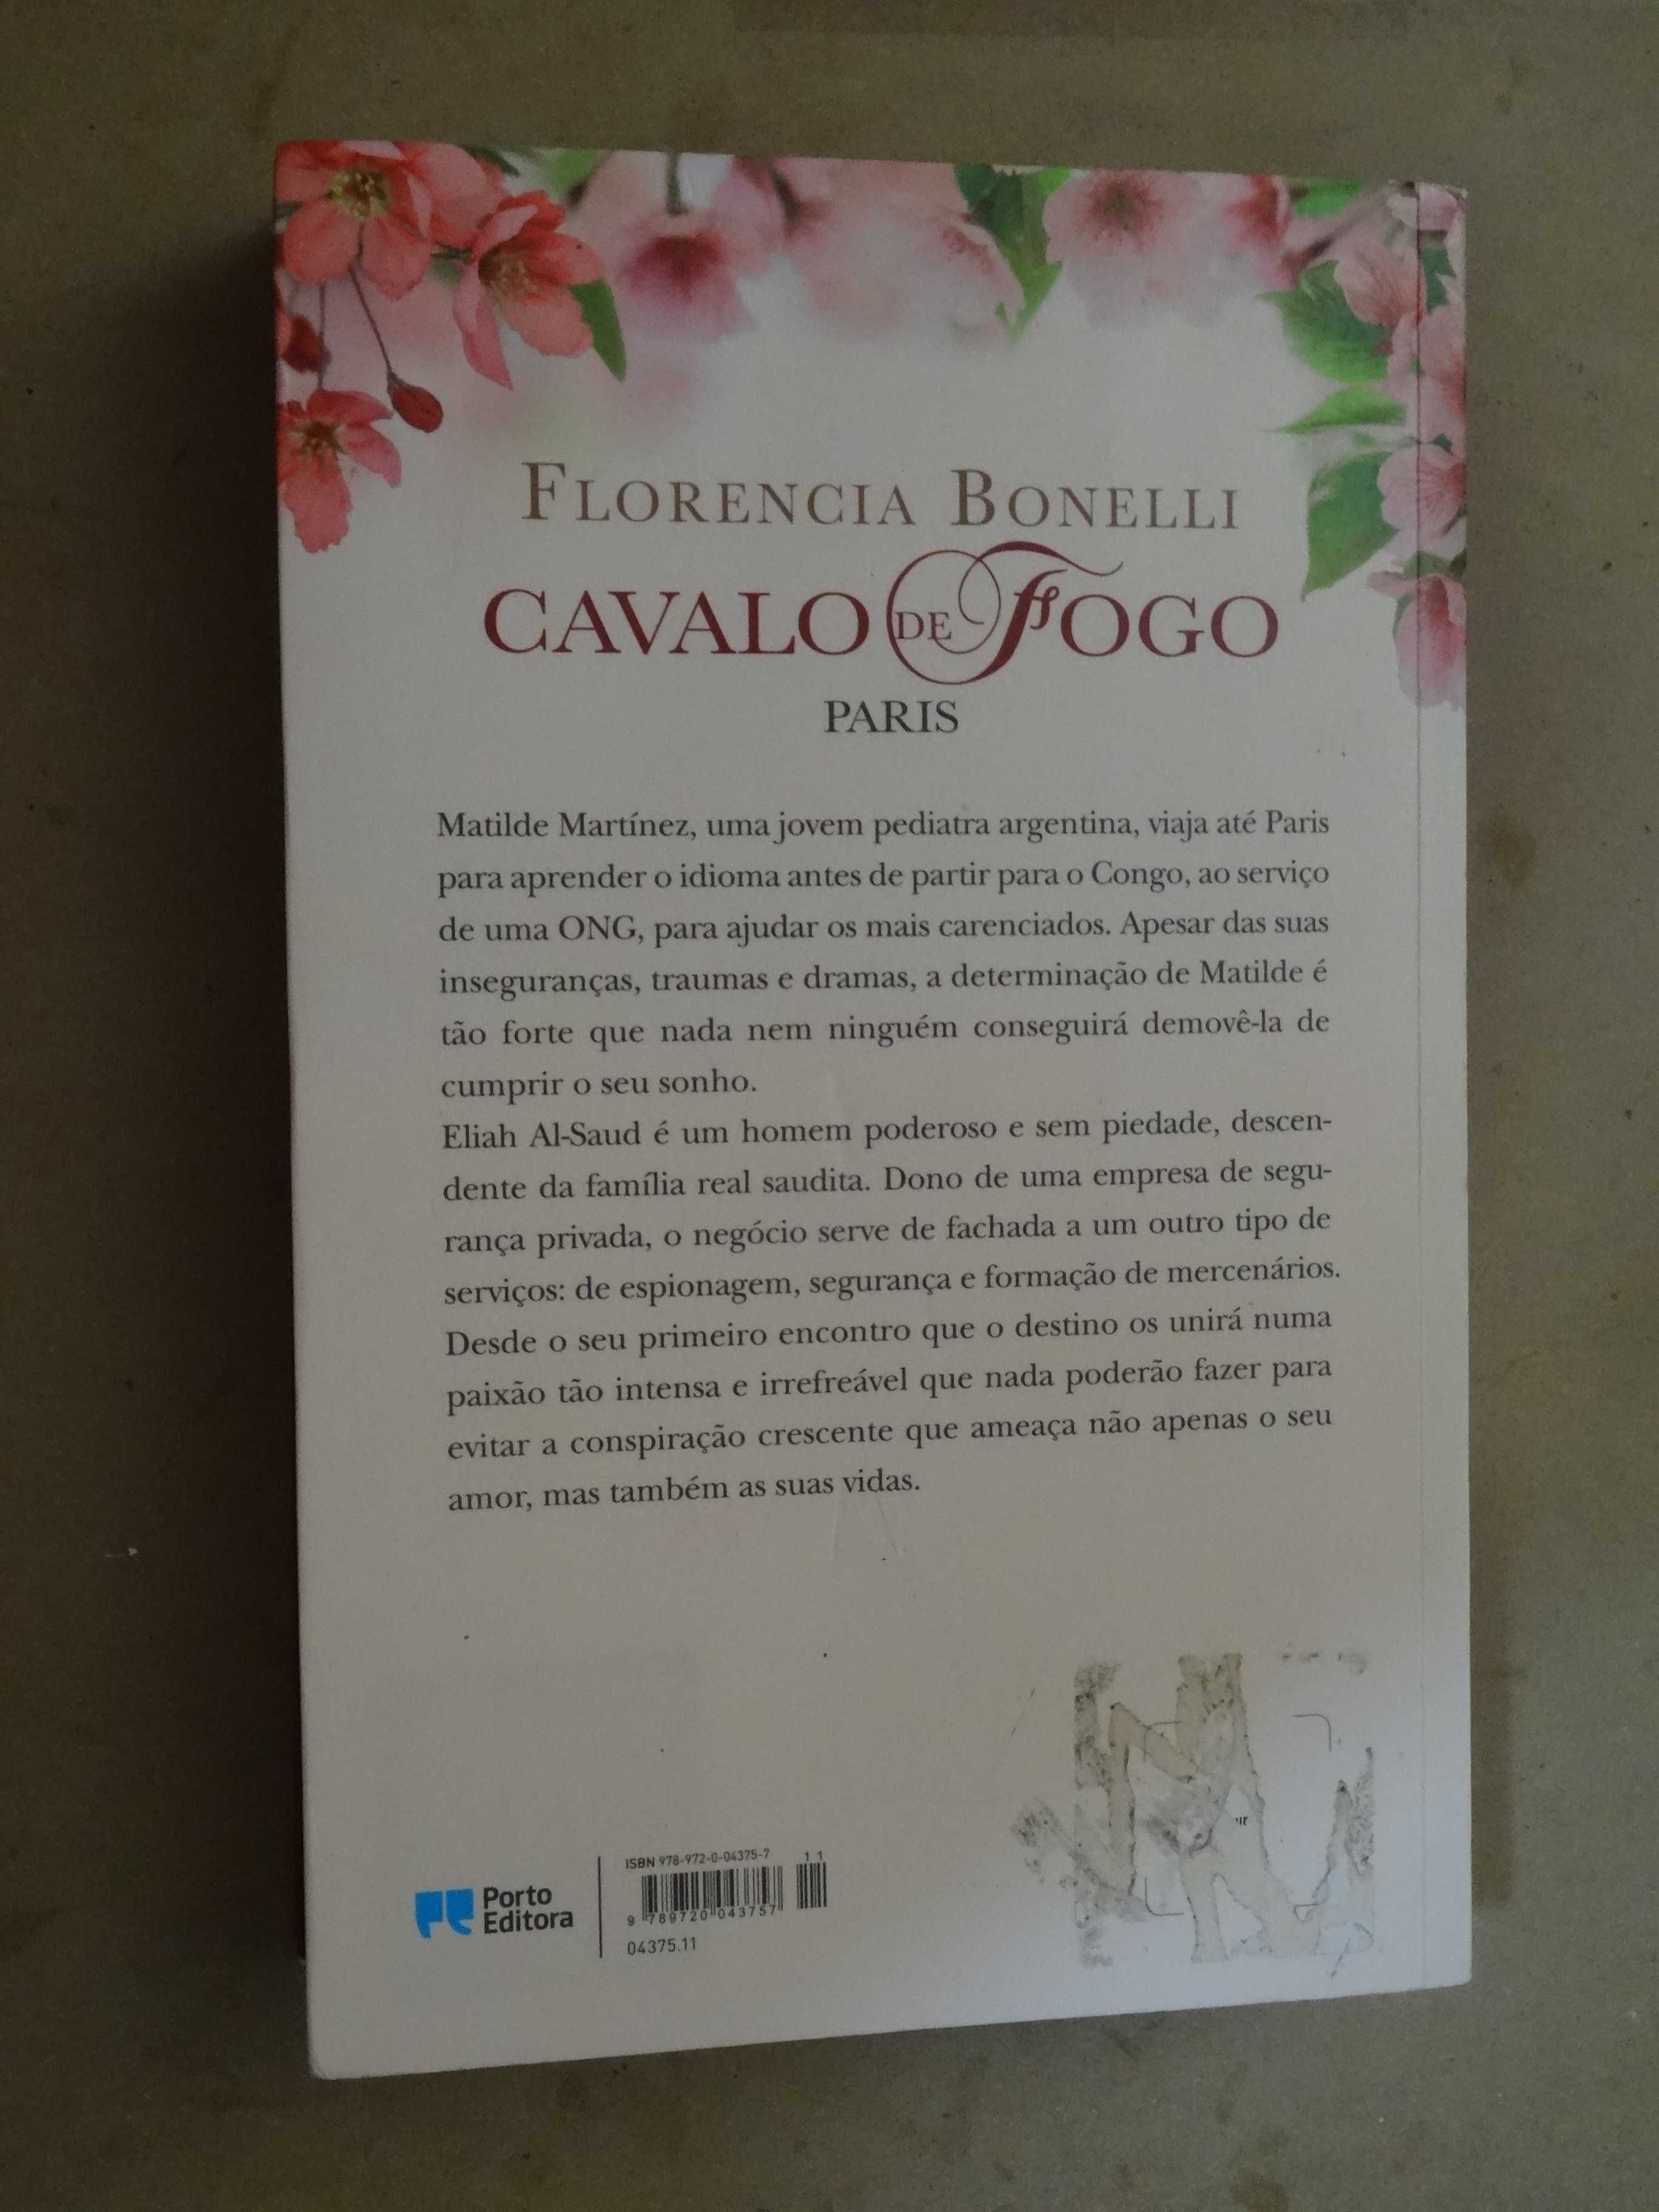 Cavalo de Fogo - Paris de Florencia Bonelli - 1ª Edição